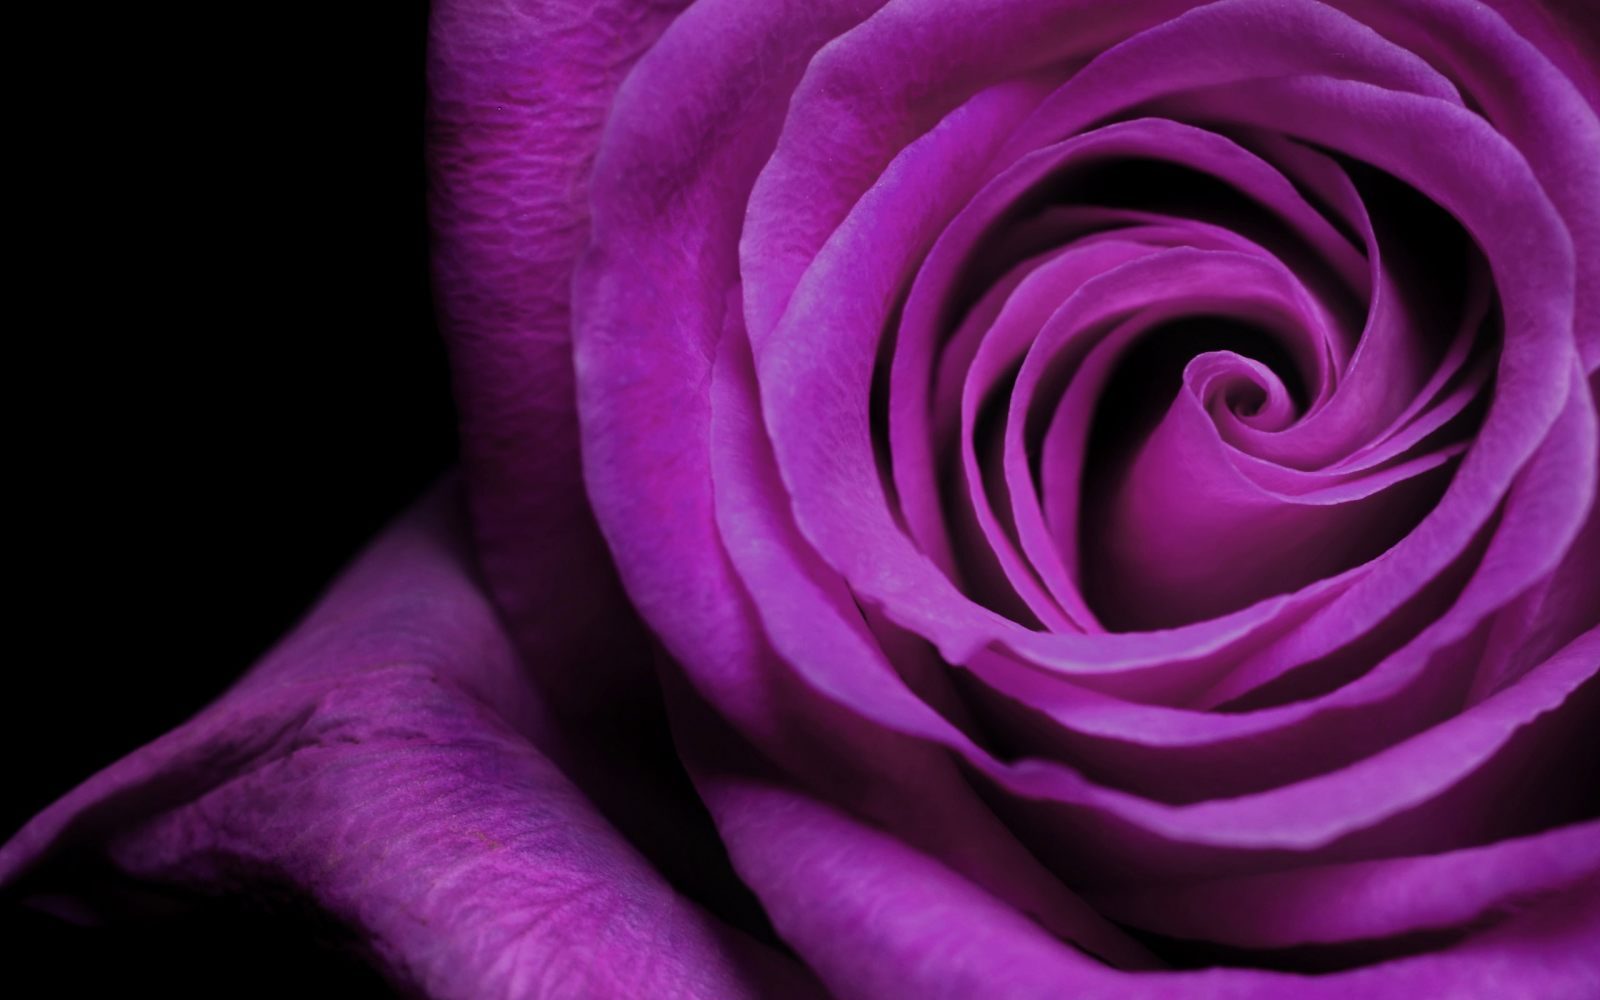 Rosa violeta :: Imágenes y fotos